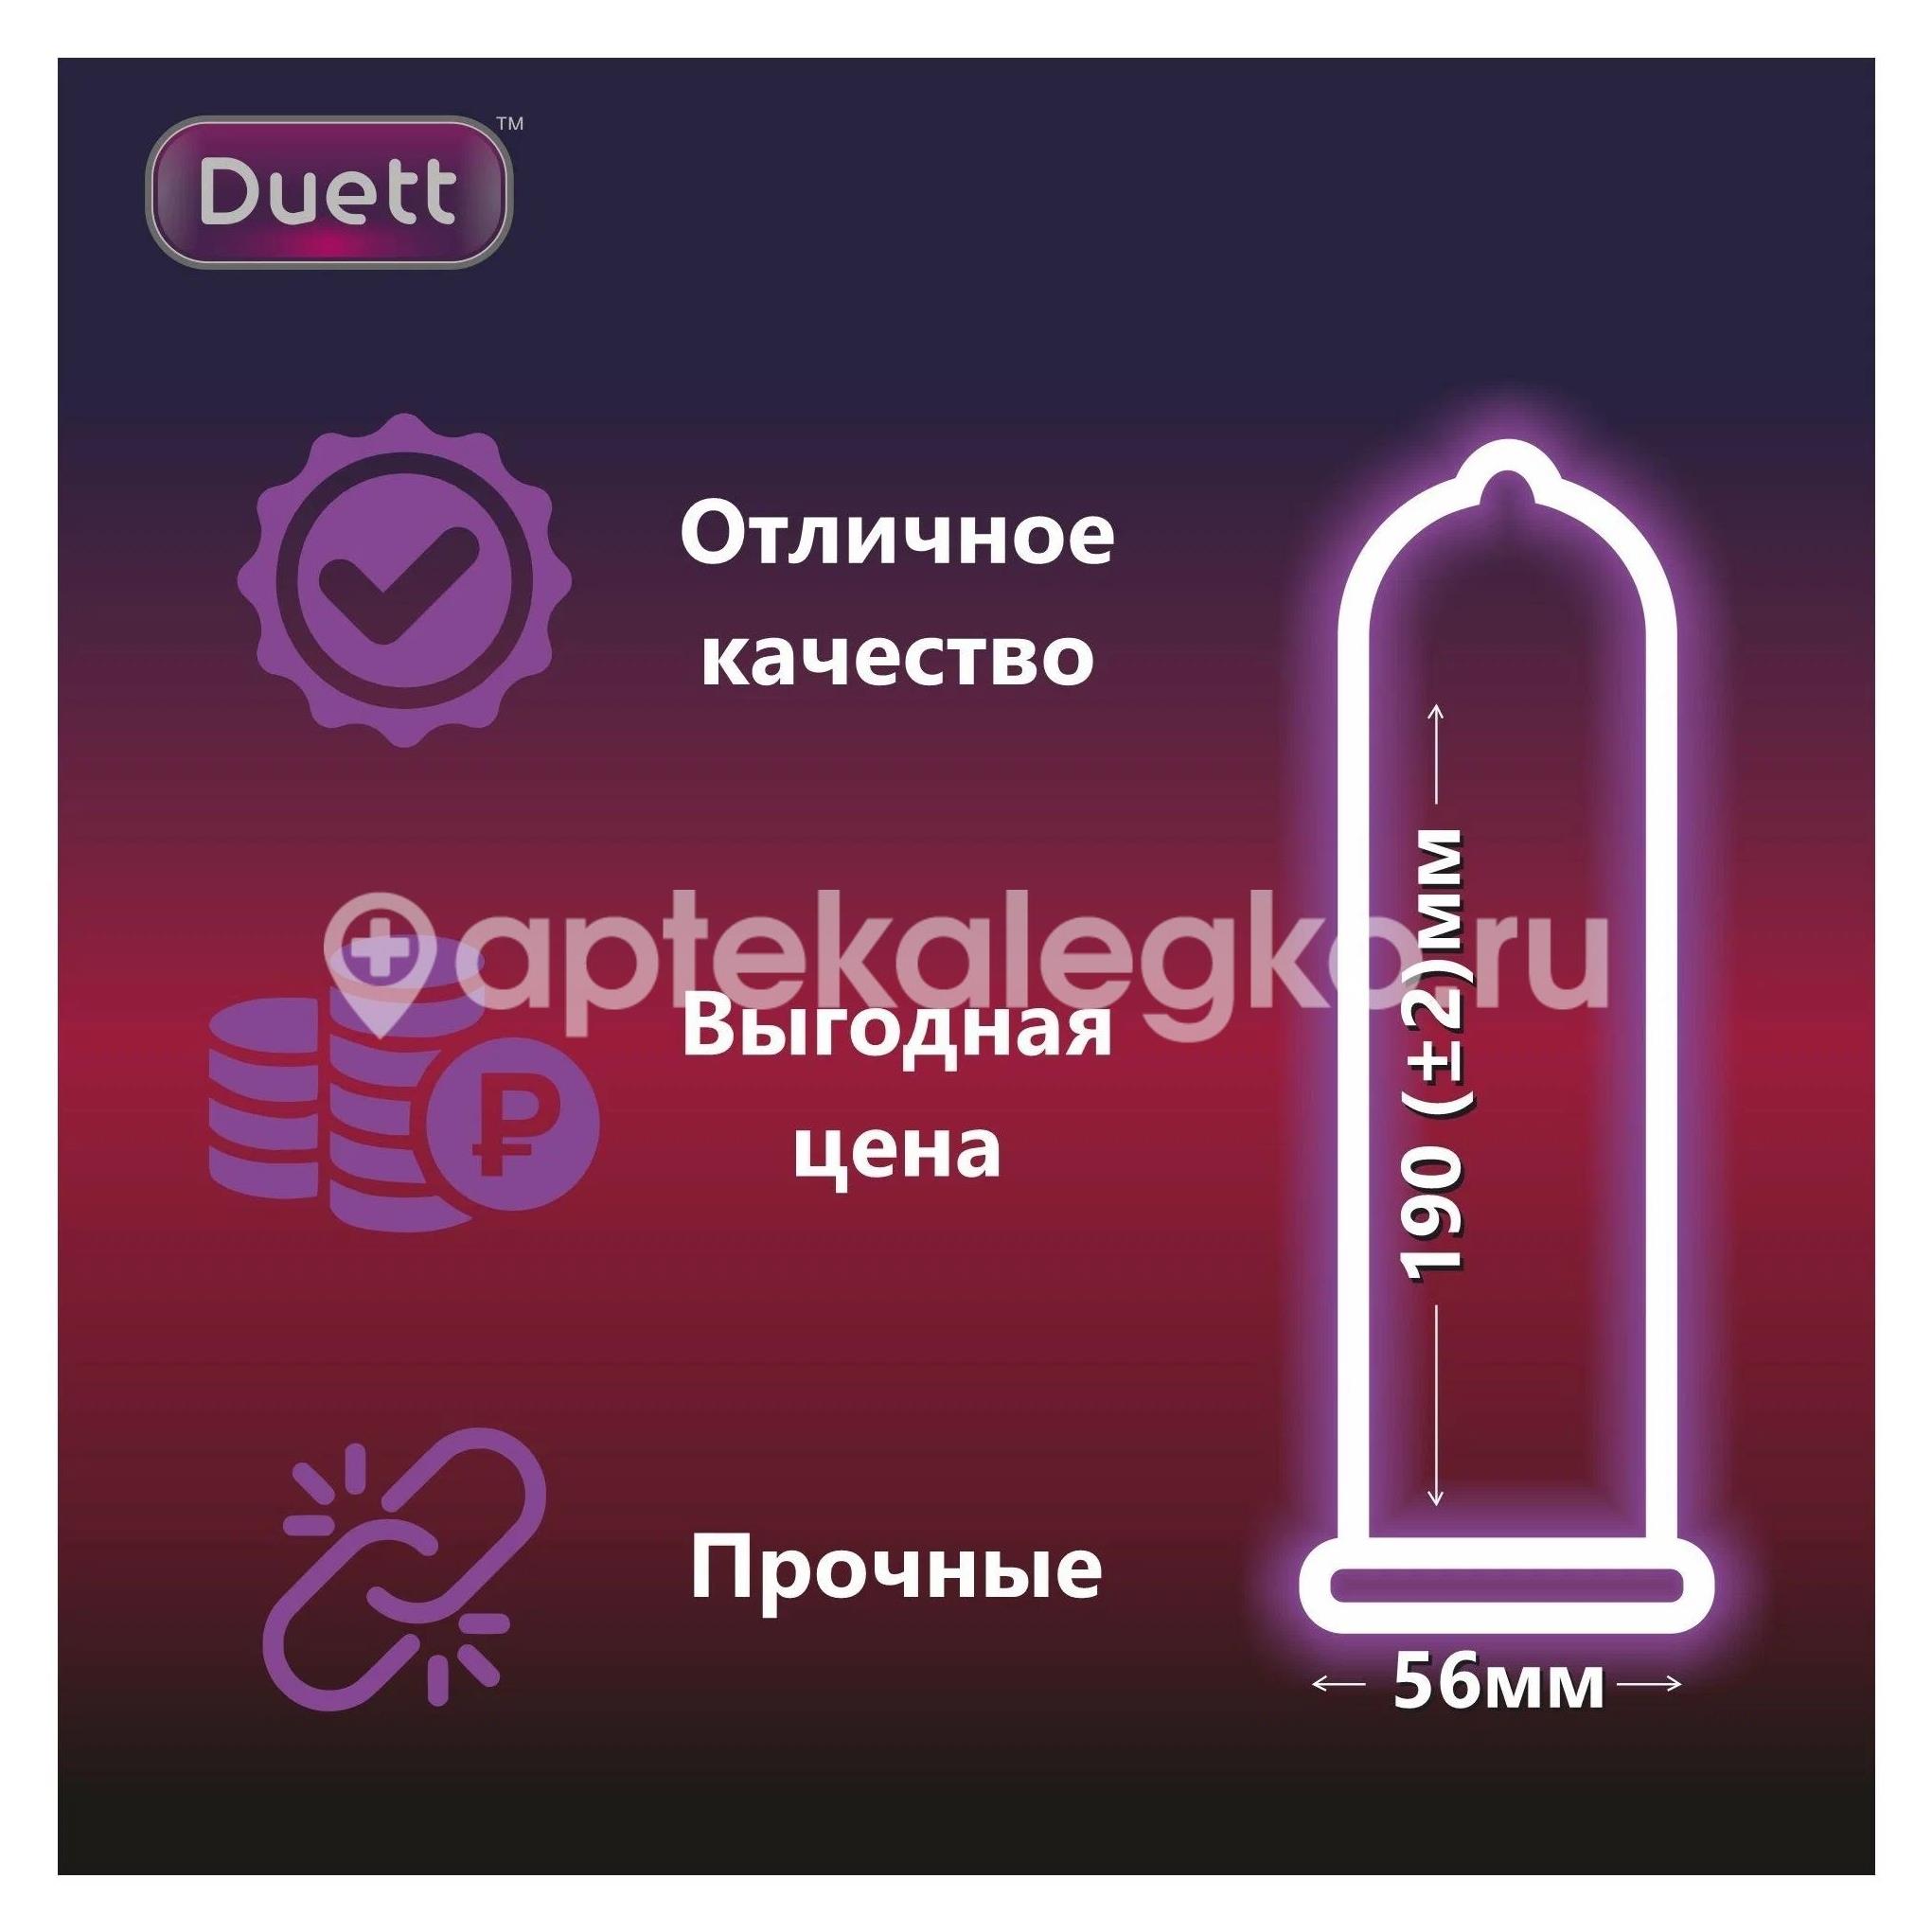 Duett xxl презервативы увеличенного размера 12 шт. [duett] - 4